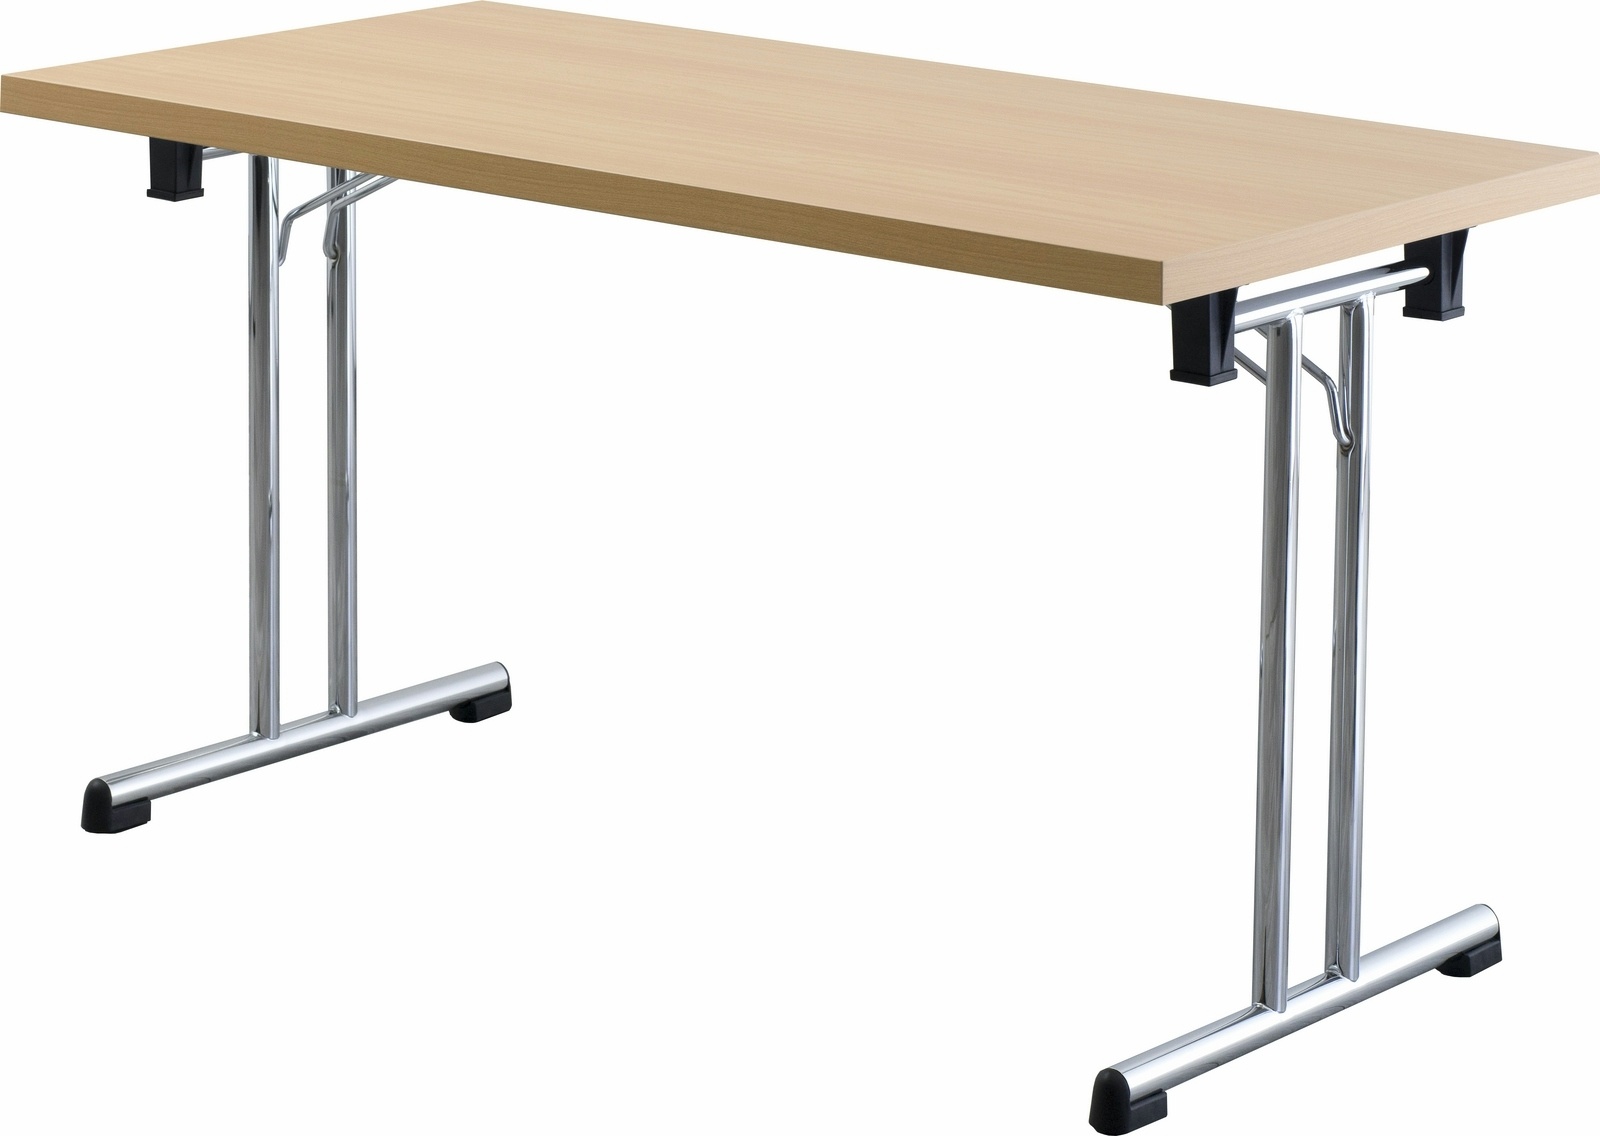 bümö Klapptisch Buche 160 x 80 cm klappbar & stapelbar, klappbarer Schreibtisch, Klappschreibtisch, Tisch klappbar, Klappbarer Tisch, Klapptisch